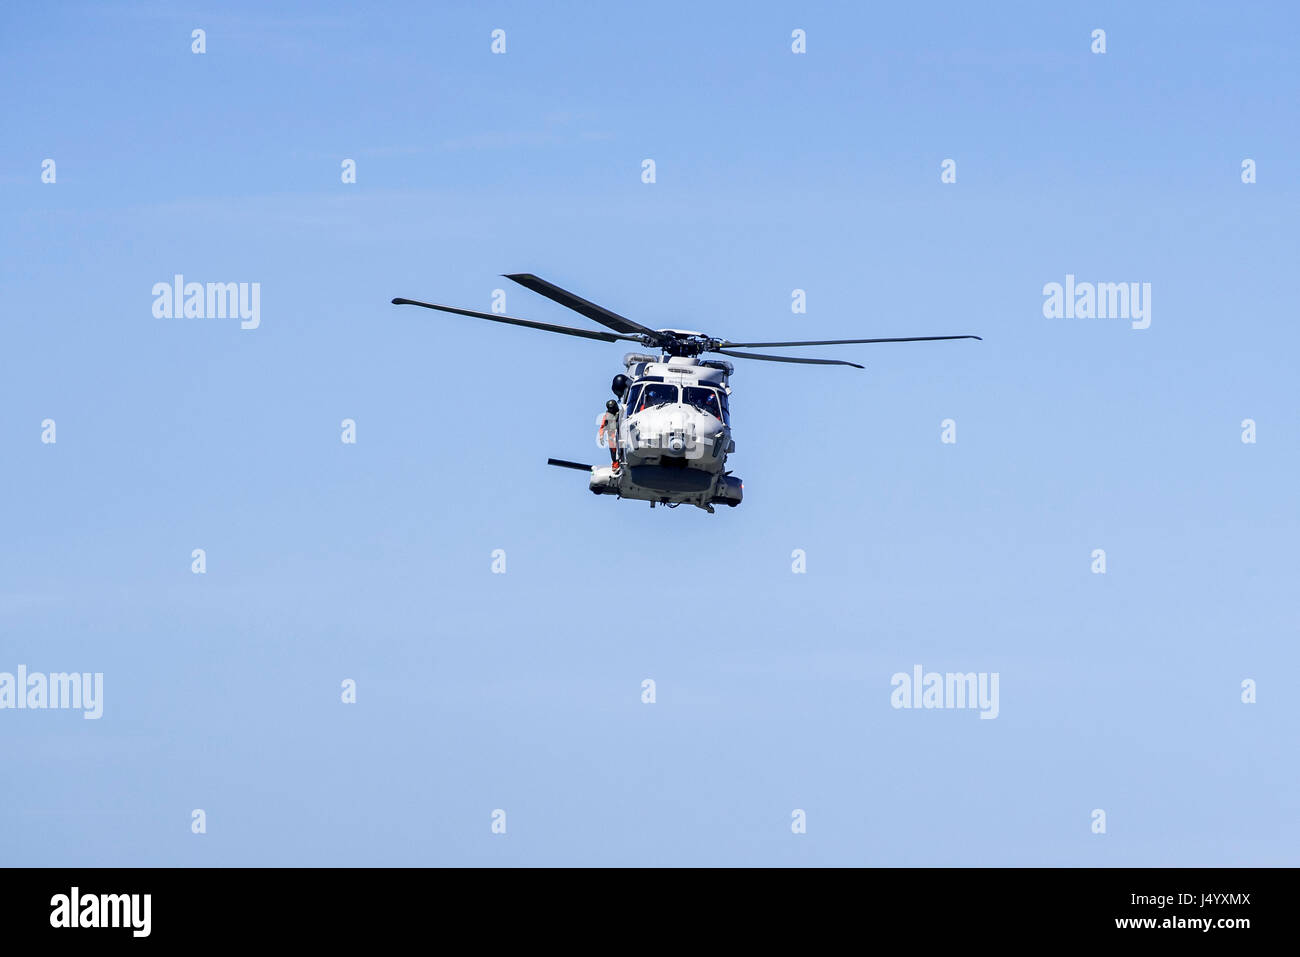 NH90 NFH Caiman NATO Frigate Helicopter der belgischen Armee Luft Komponente im Flug während Küsten-Suche und Rettung mission Stockfoto